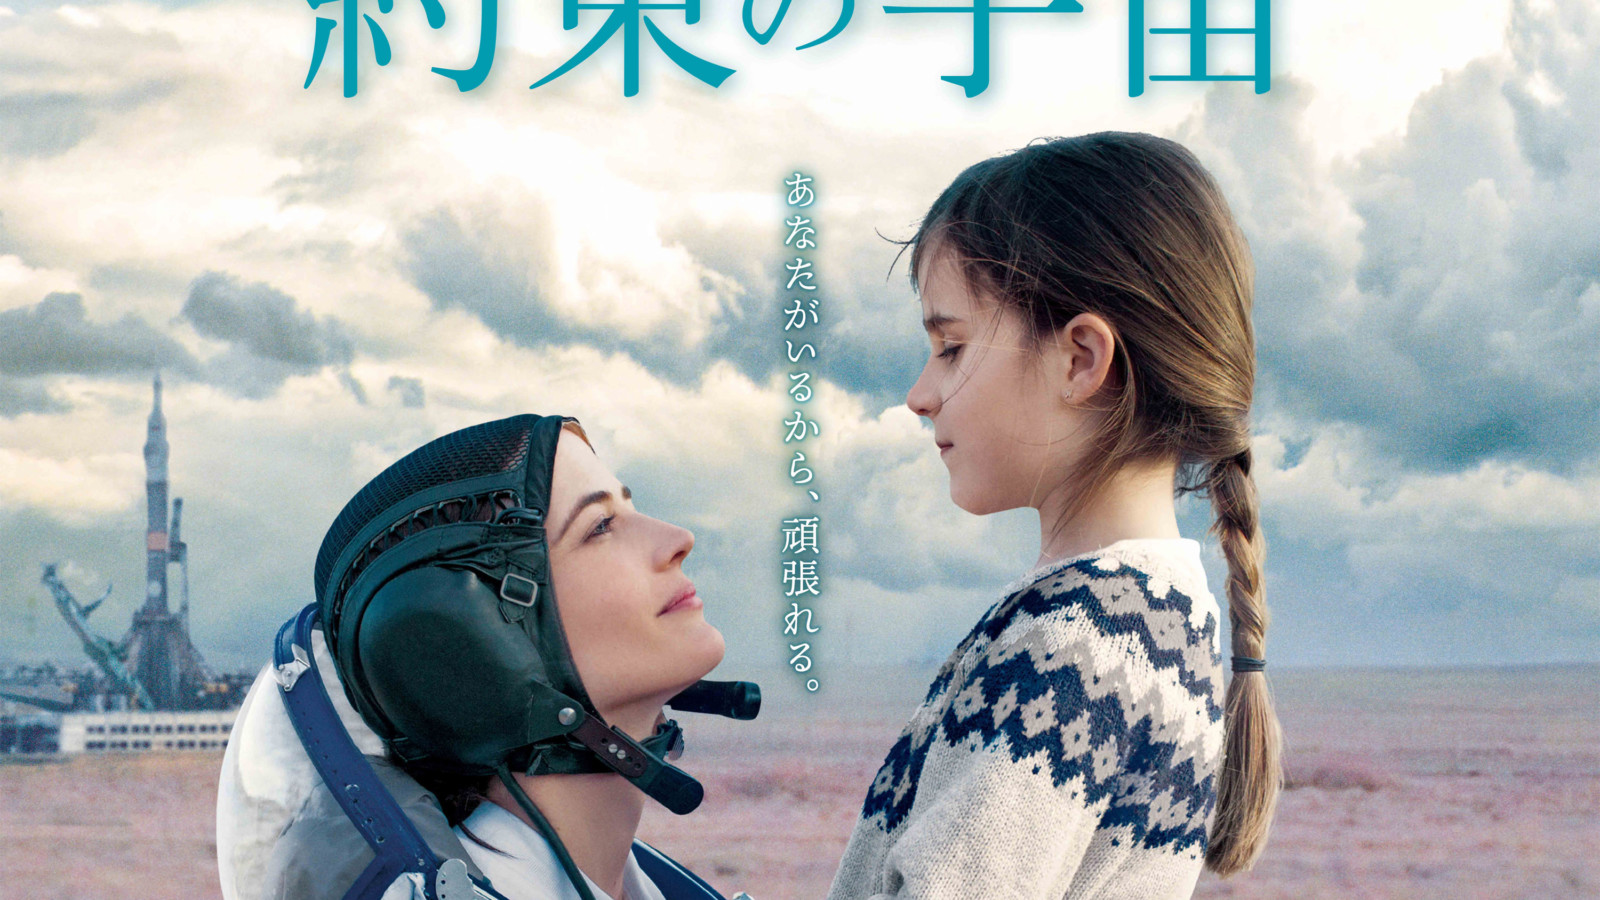 エヴァ グリーン主演 約束の宇宙 21年4月16日公開決定 日本版ポスターが解禁 Fan S Voice ファンズボイス